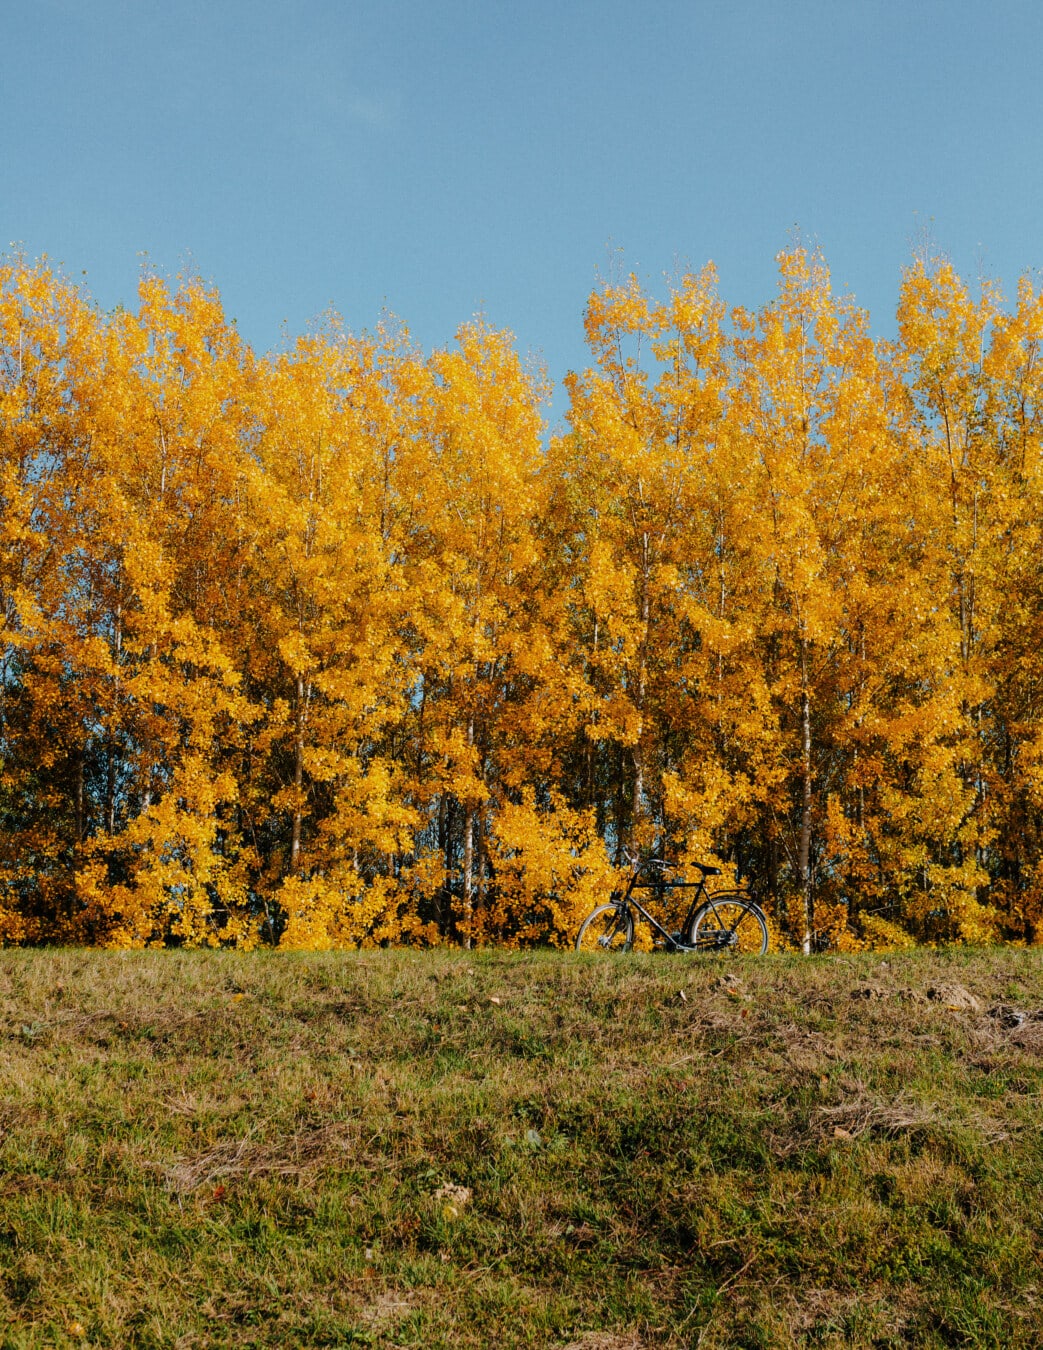 stagione autunnale, colori, giallo arancio, sulla collina, pioppo tremolo, autunno, albero, foresta, orizzontale, legno